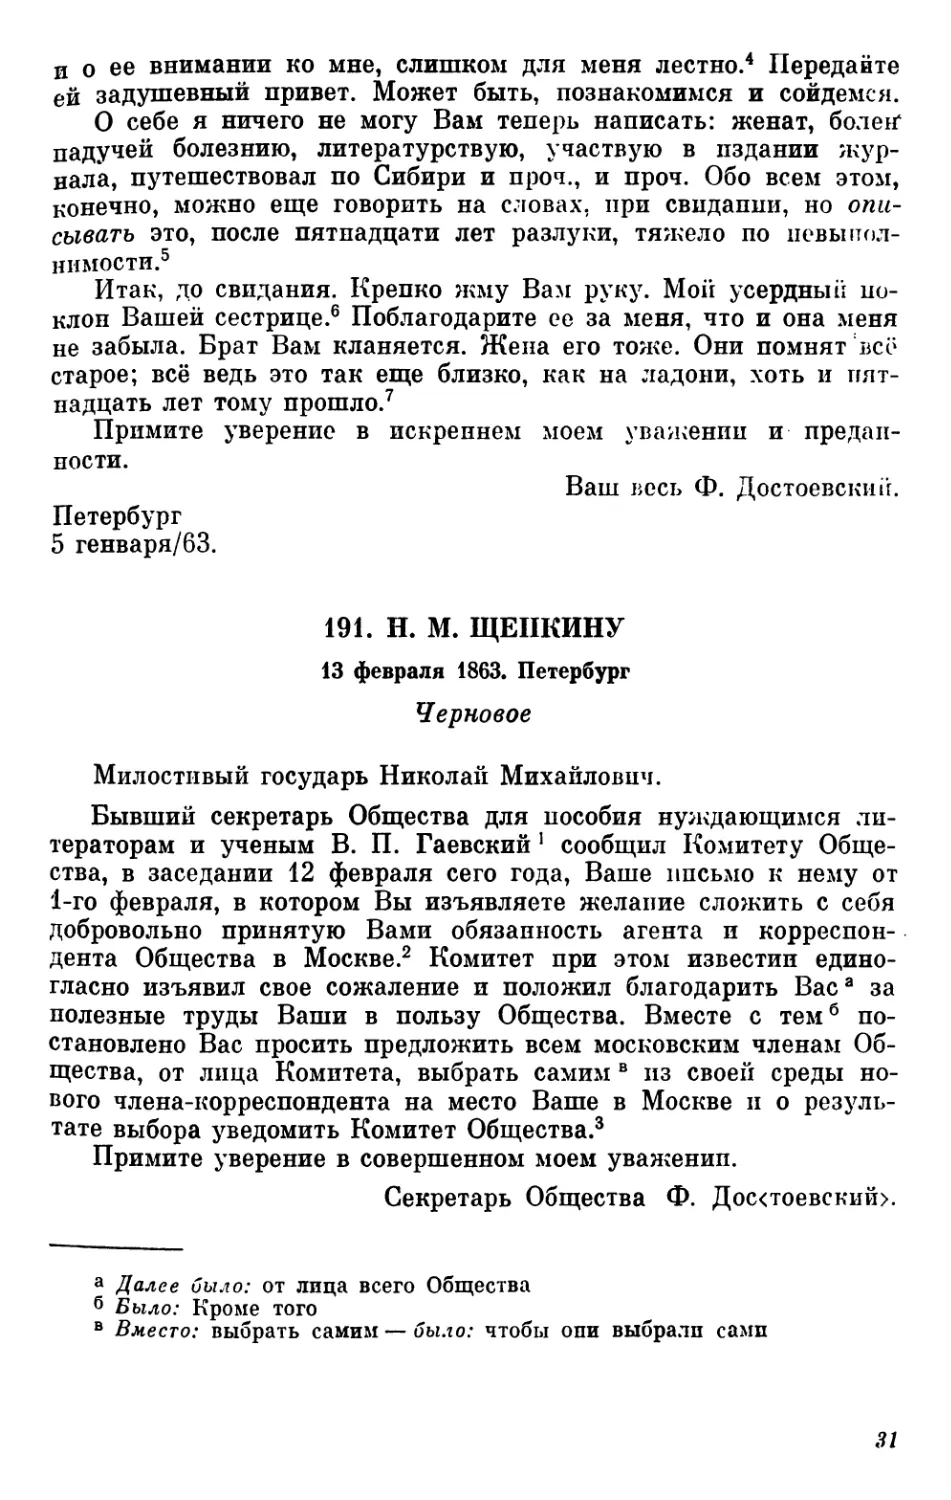 191. Н.М. Щепкину. 13 февраля